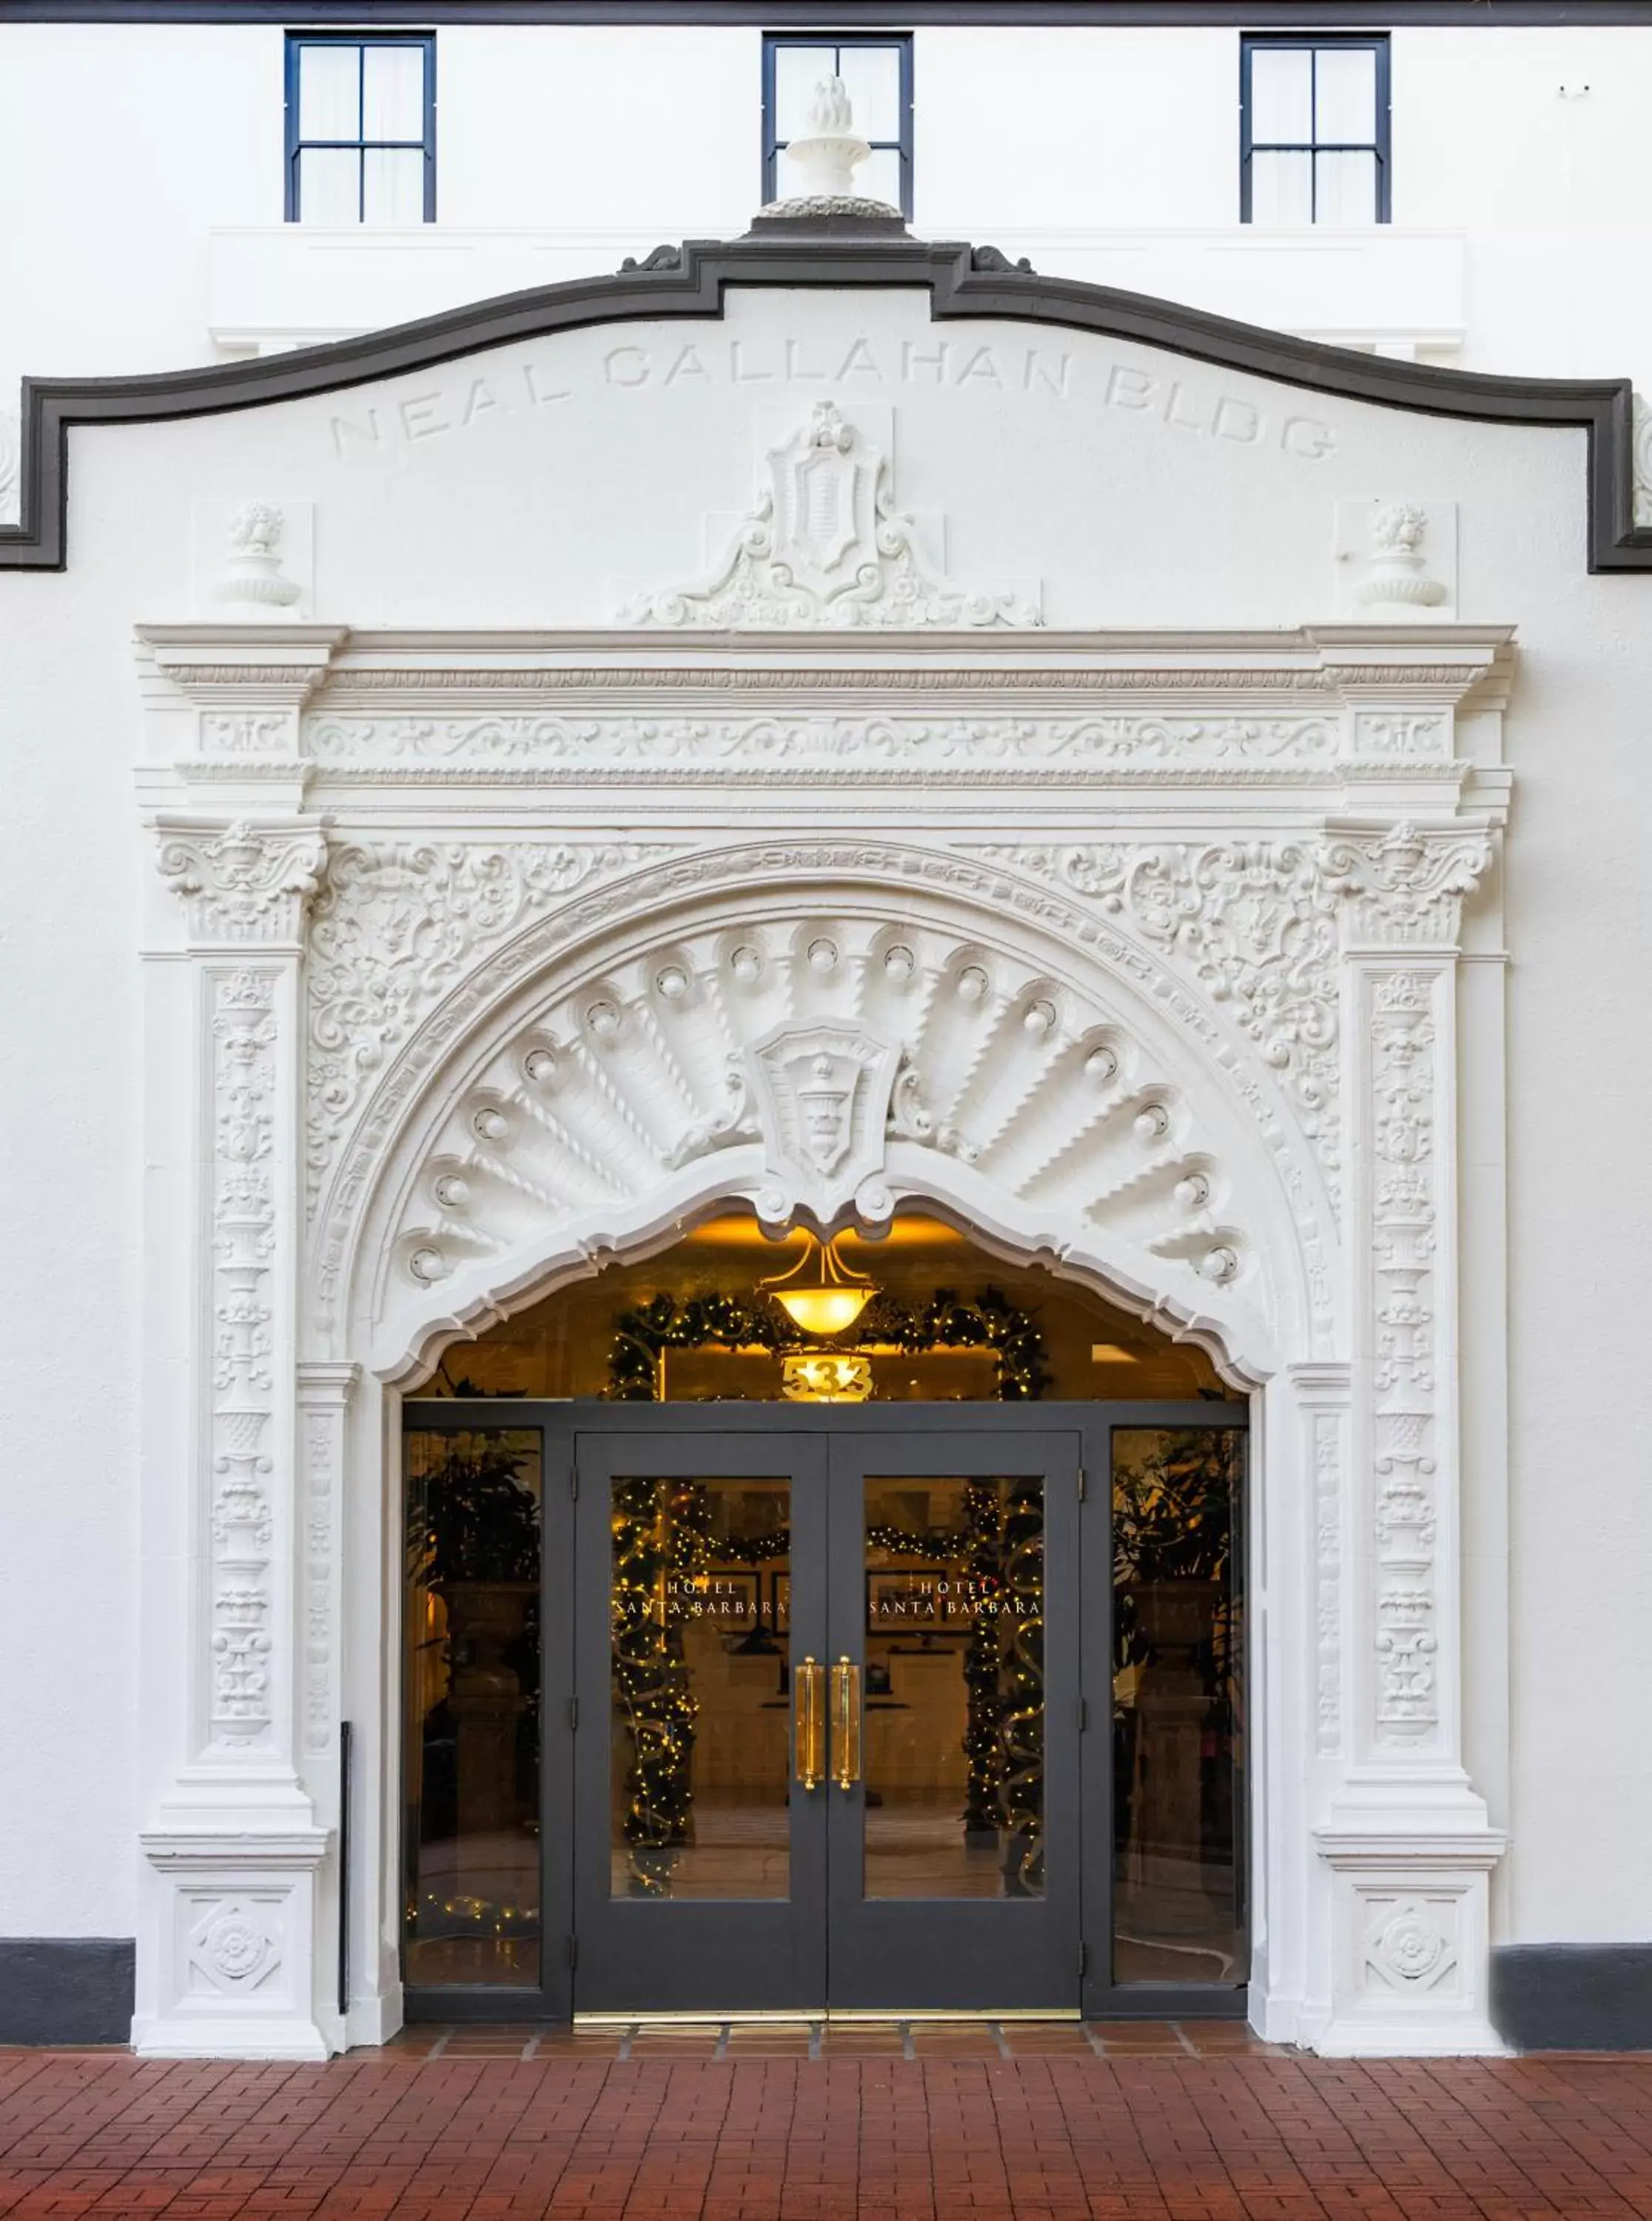 Facade/entrance in Hotel Santa Barbara